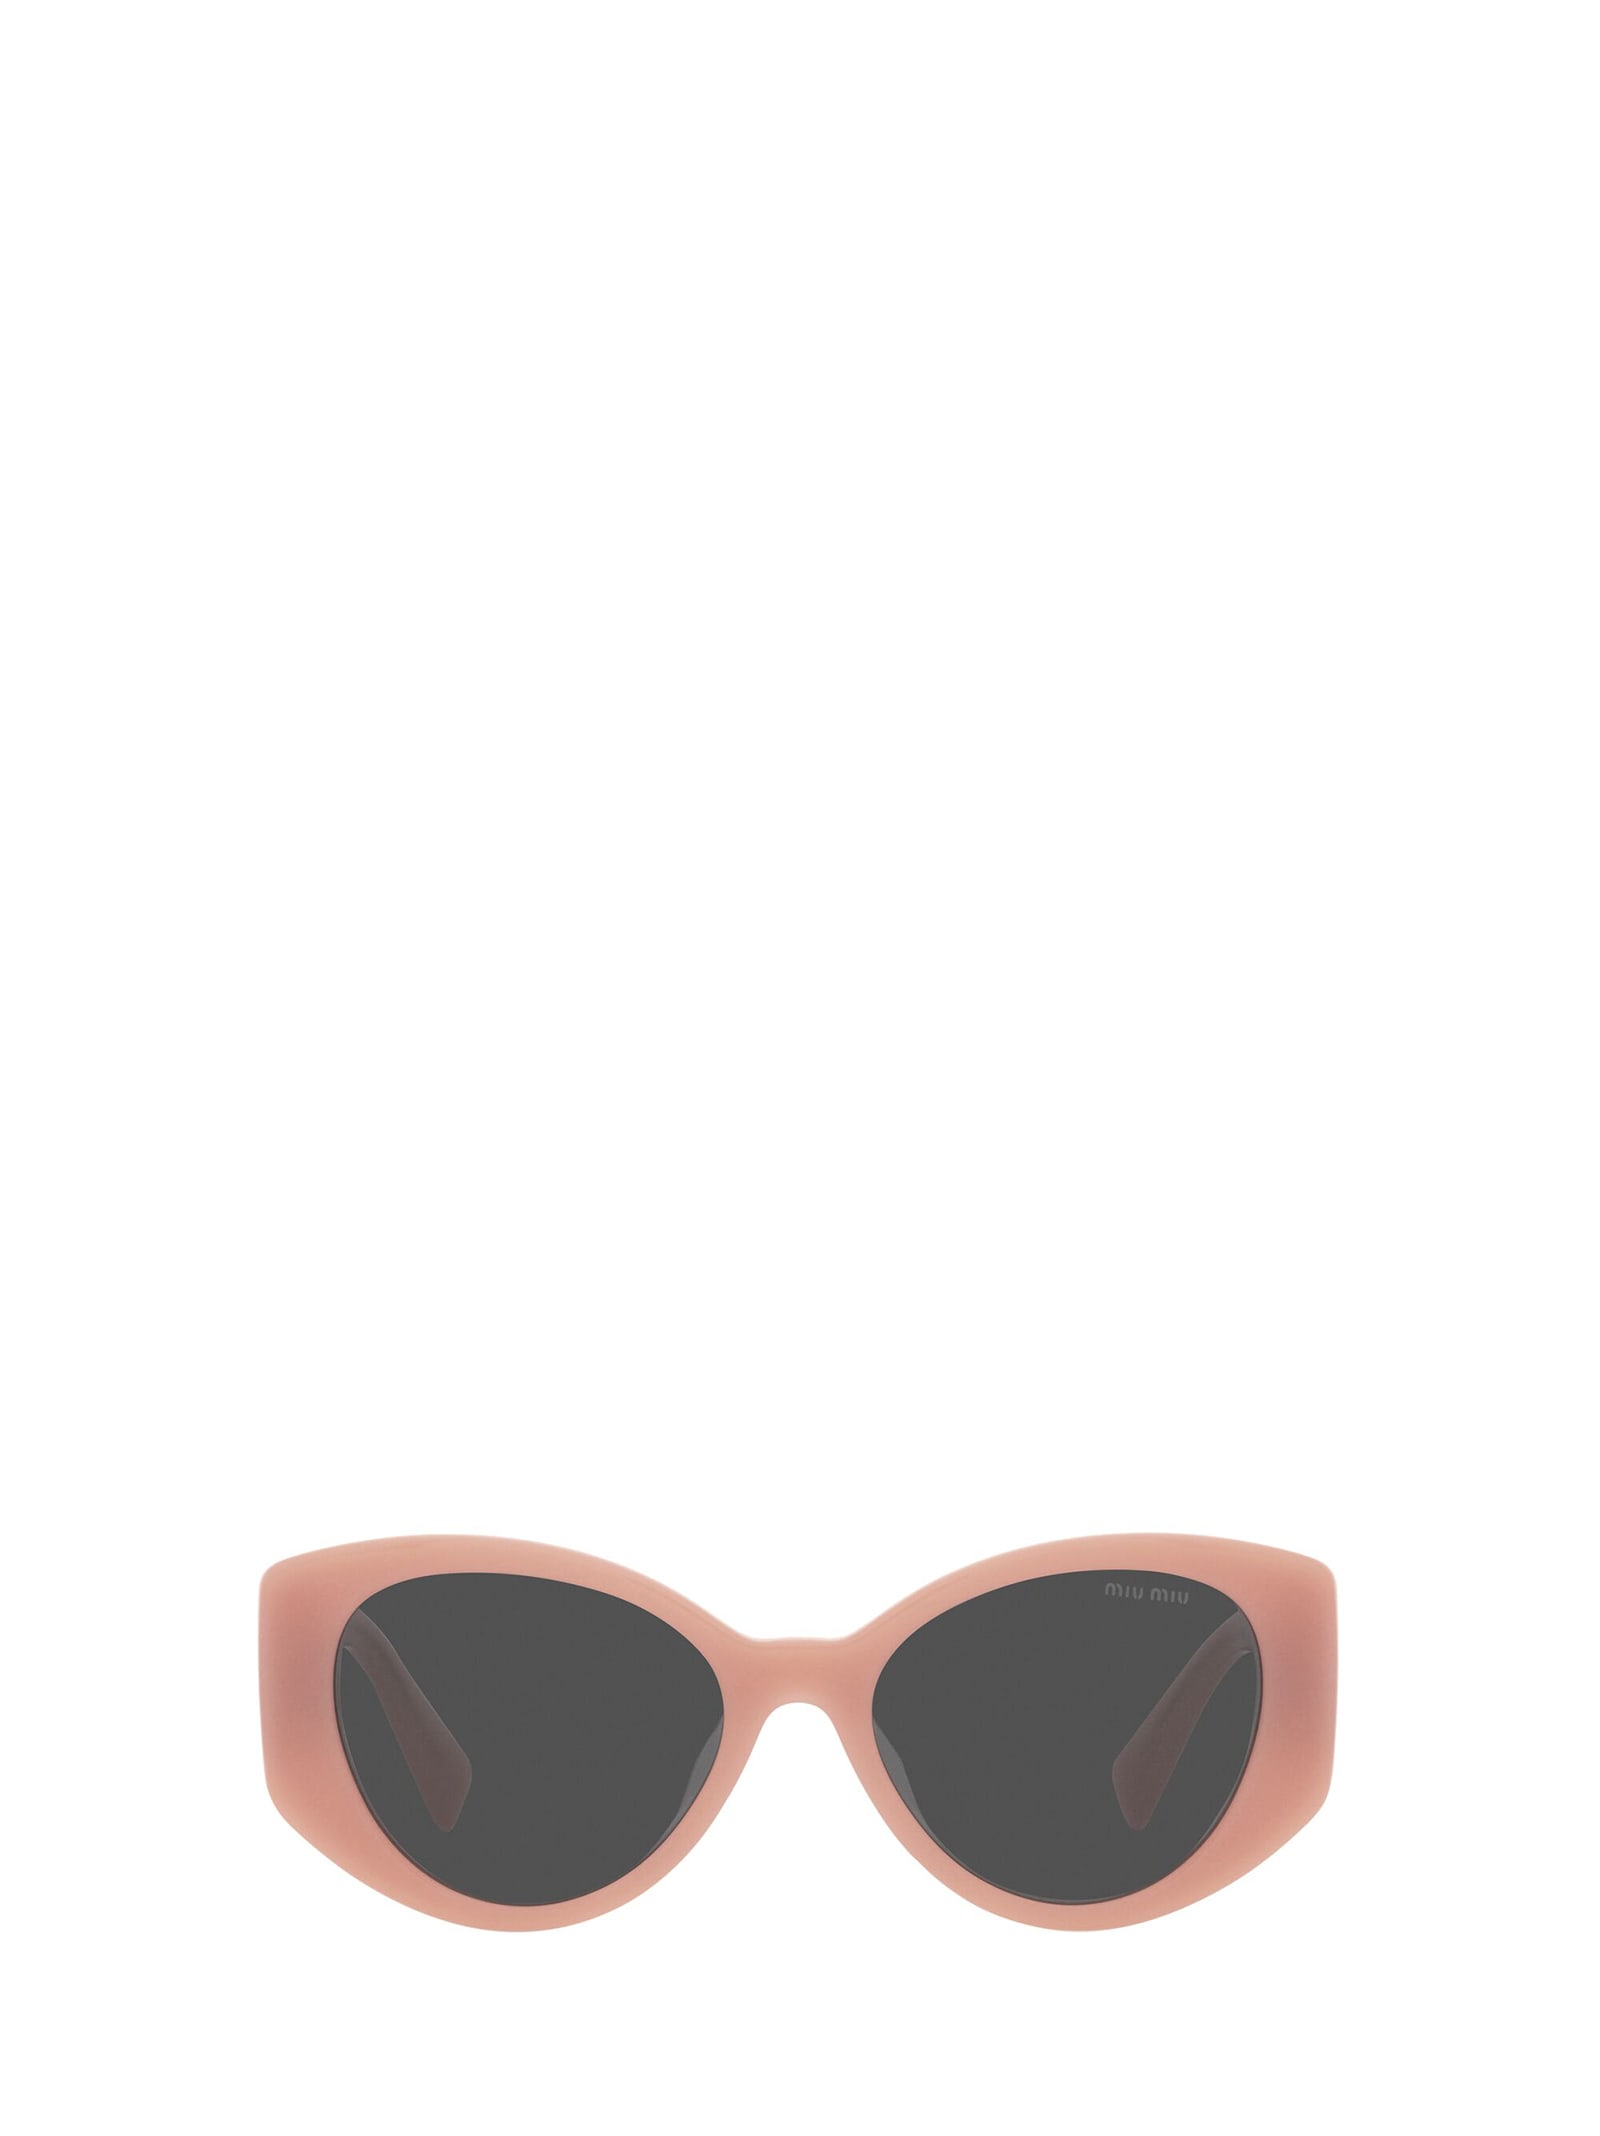 Miu Miu Eyewear Miu Miu Mu 03ws Pink Opal Sunglasses